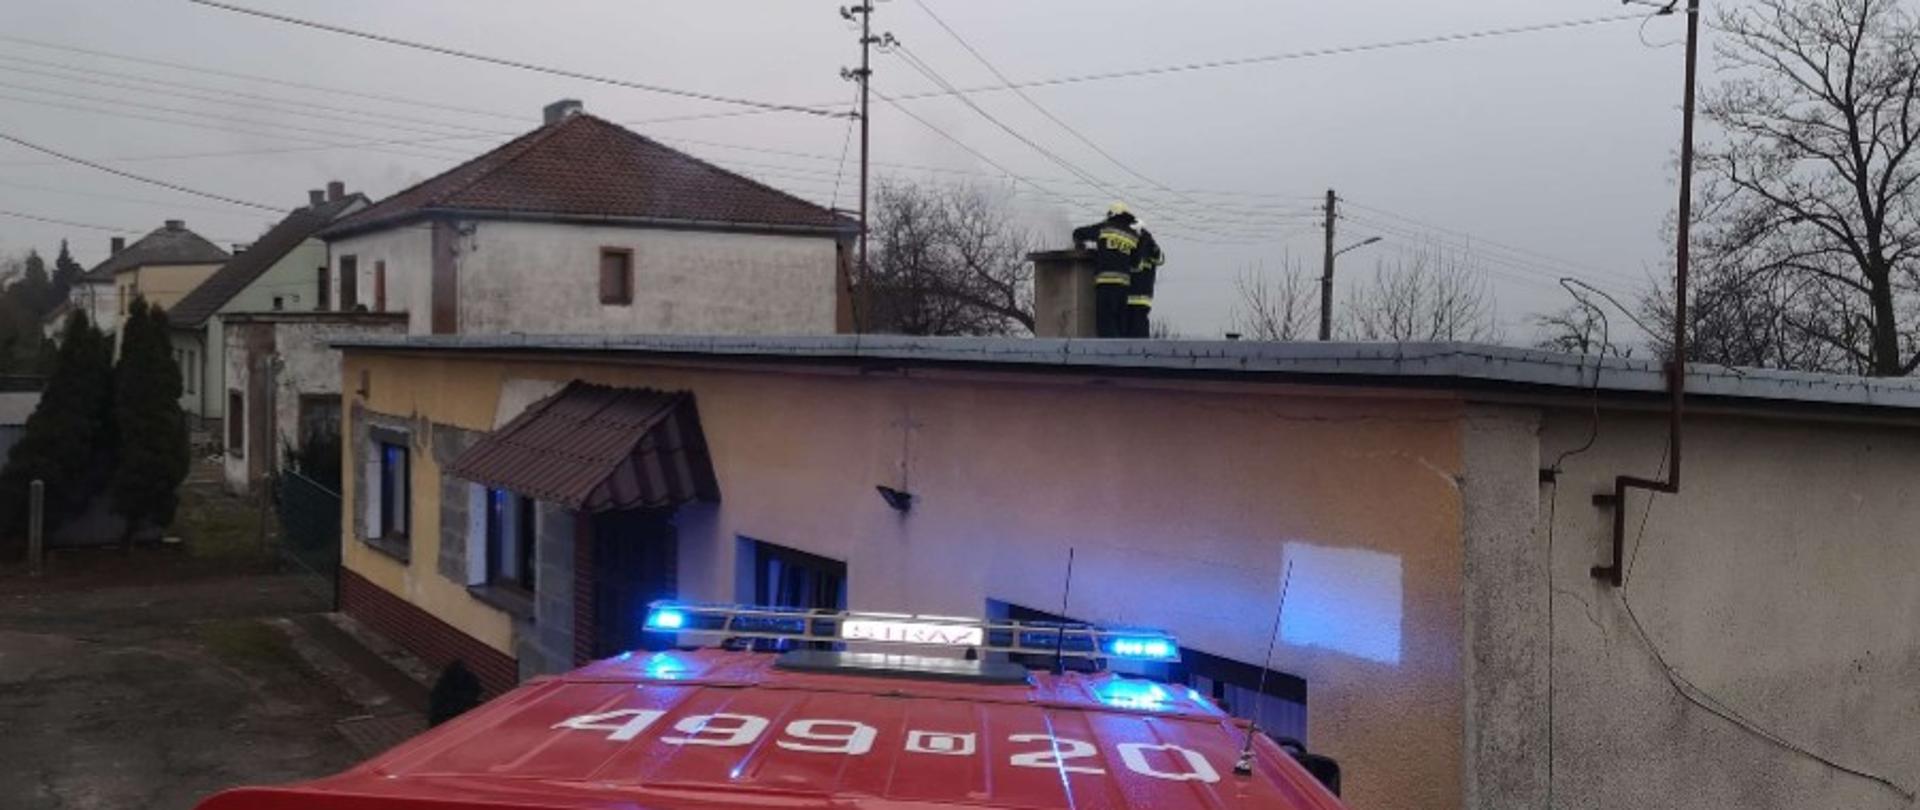 Zdjęcie przedstawia samochód strażacki z perspektywy dachu oraz dwóch strażaków na dachu budynku